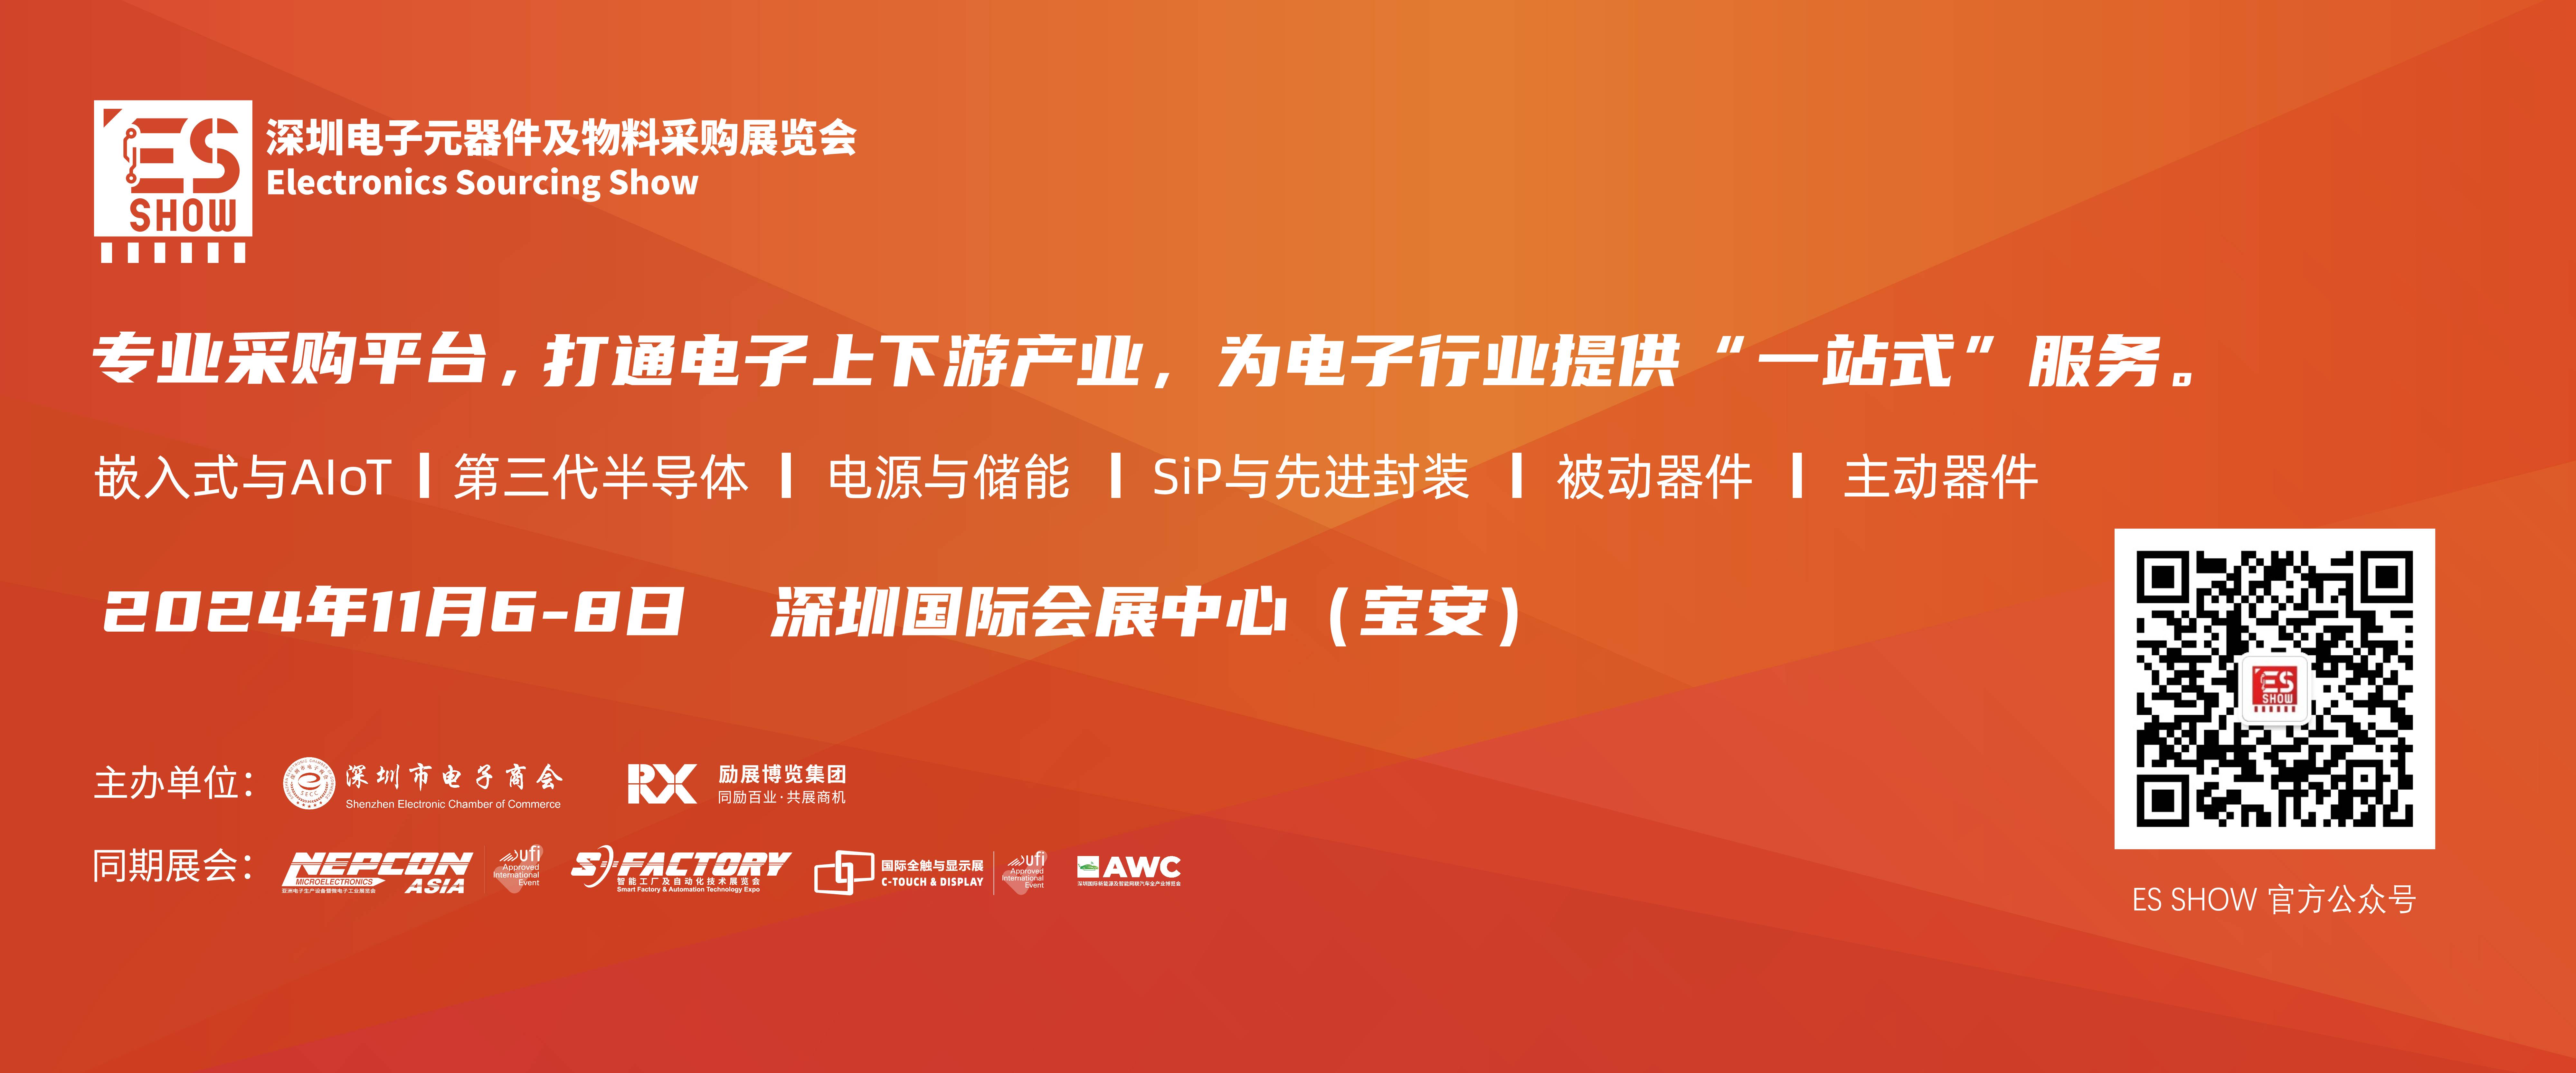 驱动芯片 电源IC 深圳电子展 华南电子展 中国电子展 元器件展会